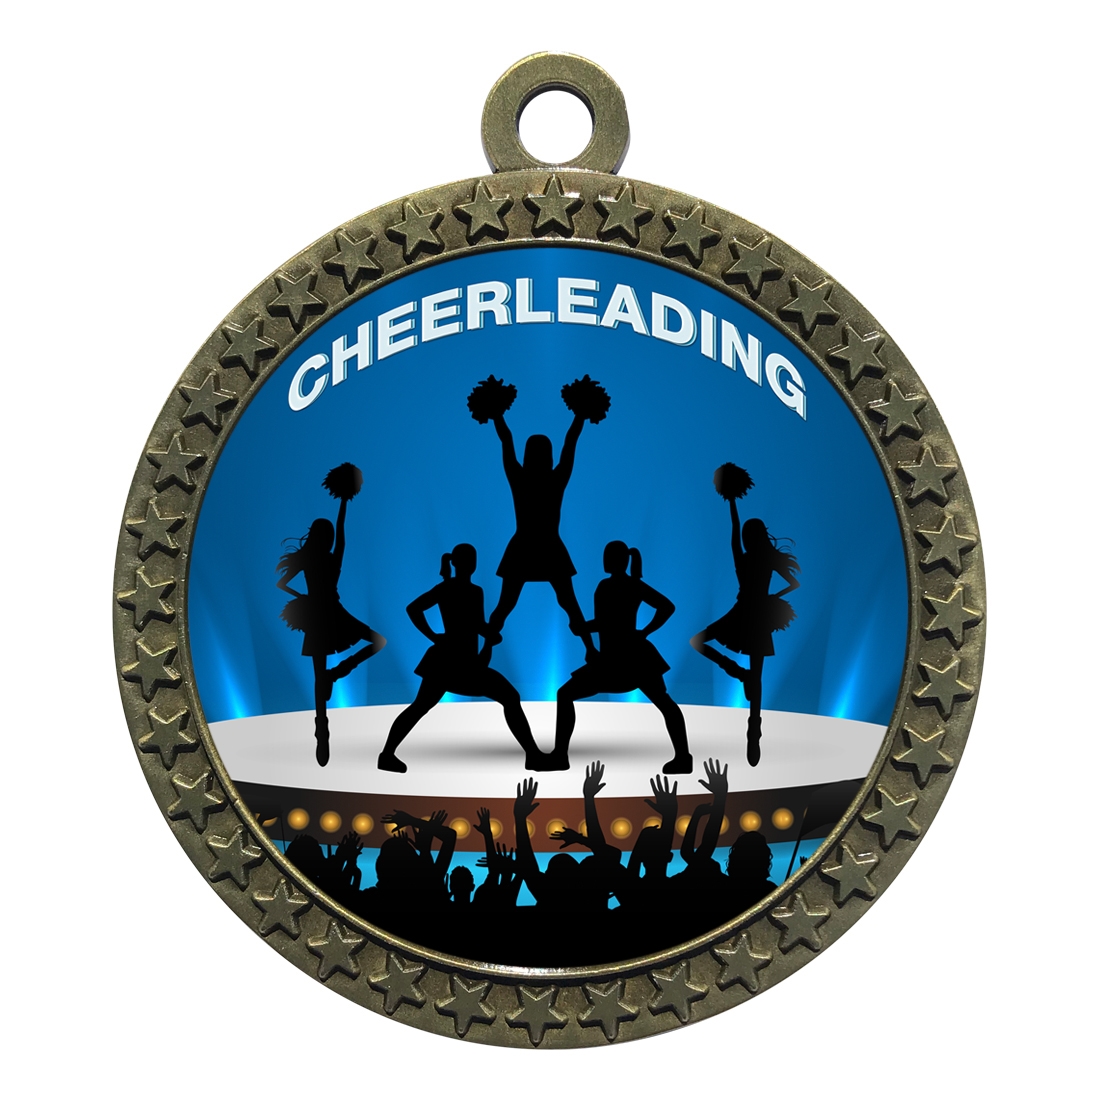 2-1/2" Cheerleading Medal